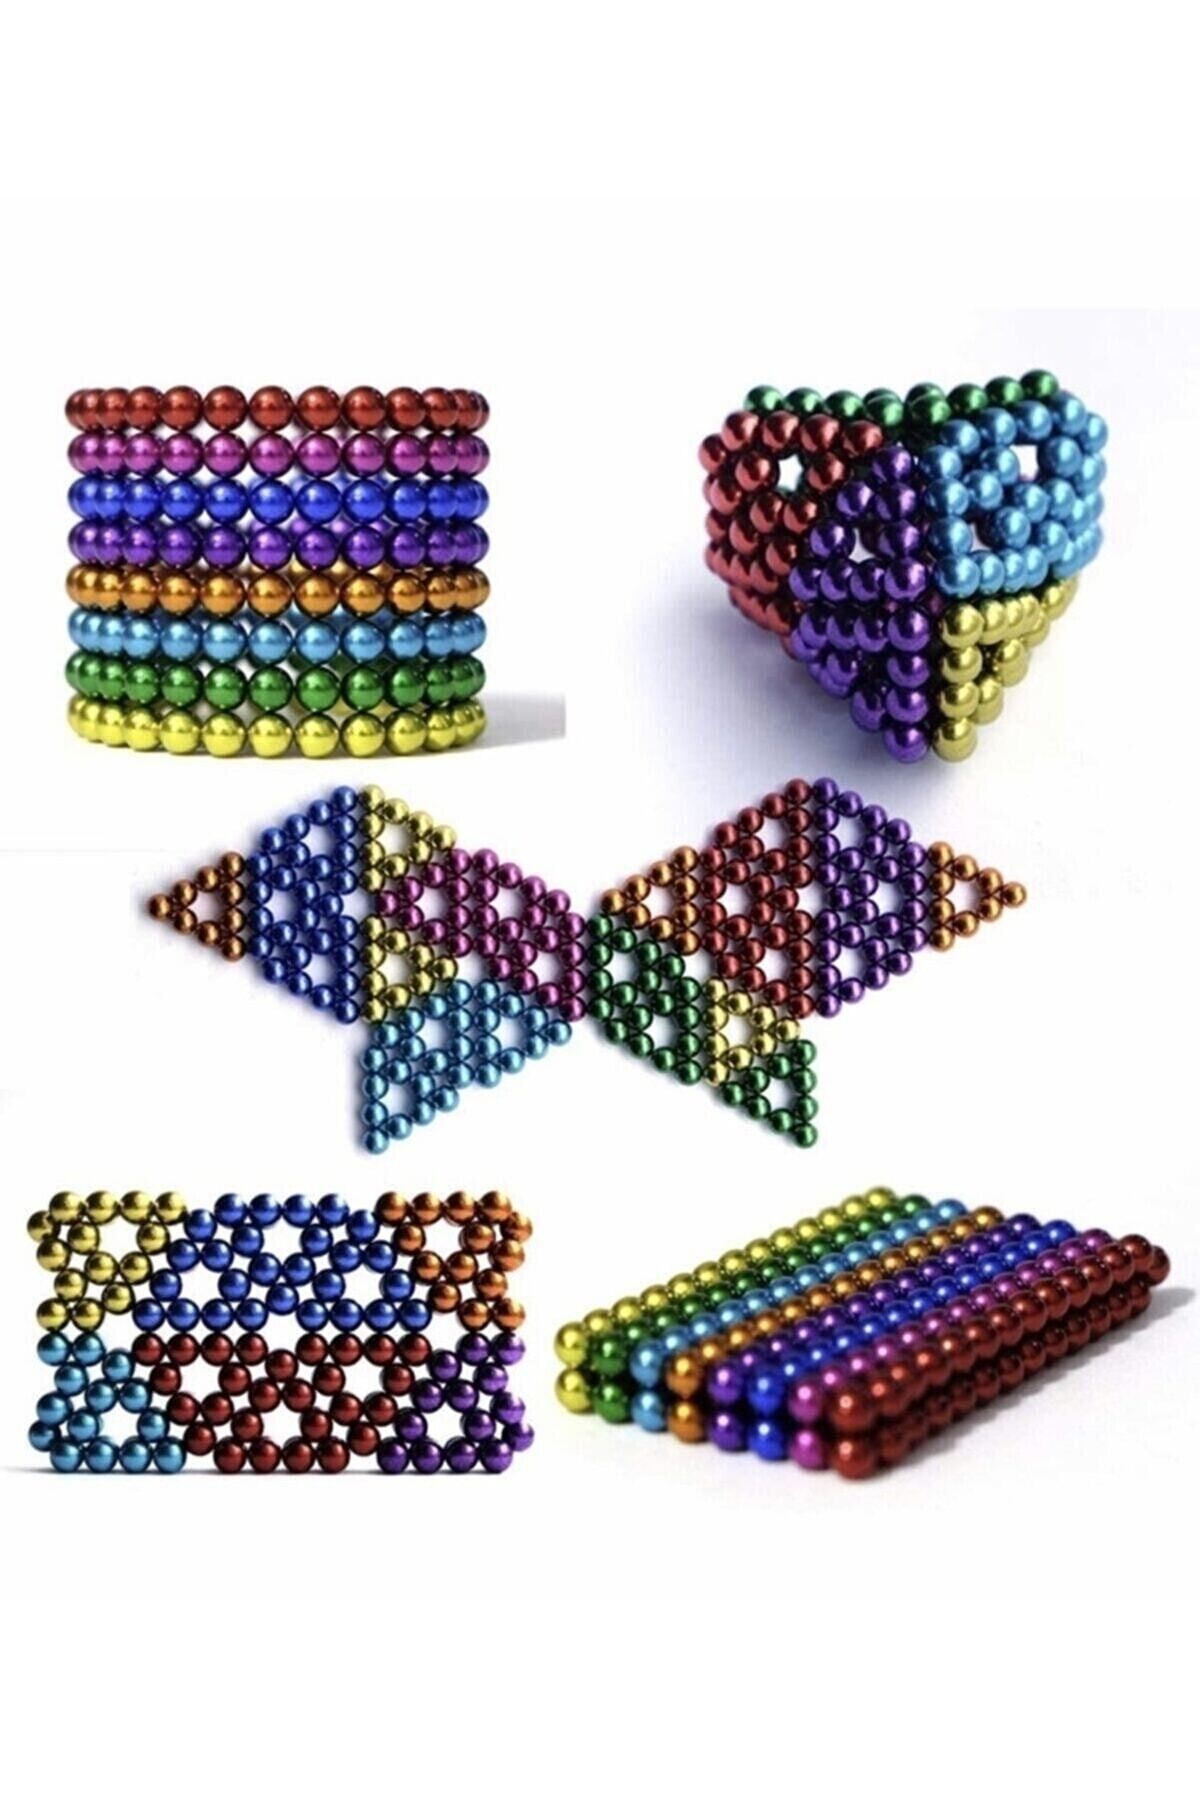 Neo Sihirli Manyetik Toplar Dyum Mıknatıs Küp Bilye 216 Adet Cube Küp Dymium